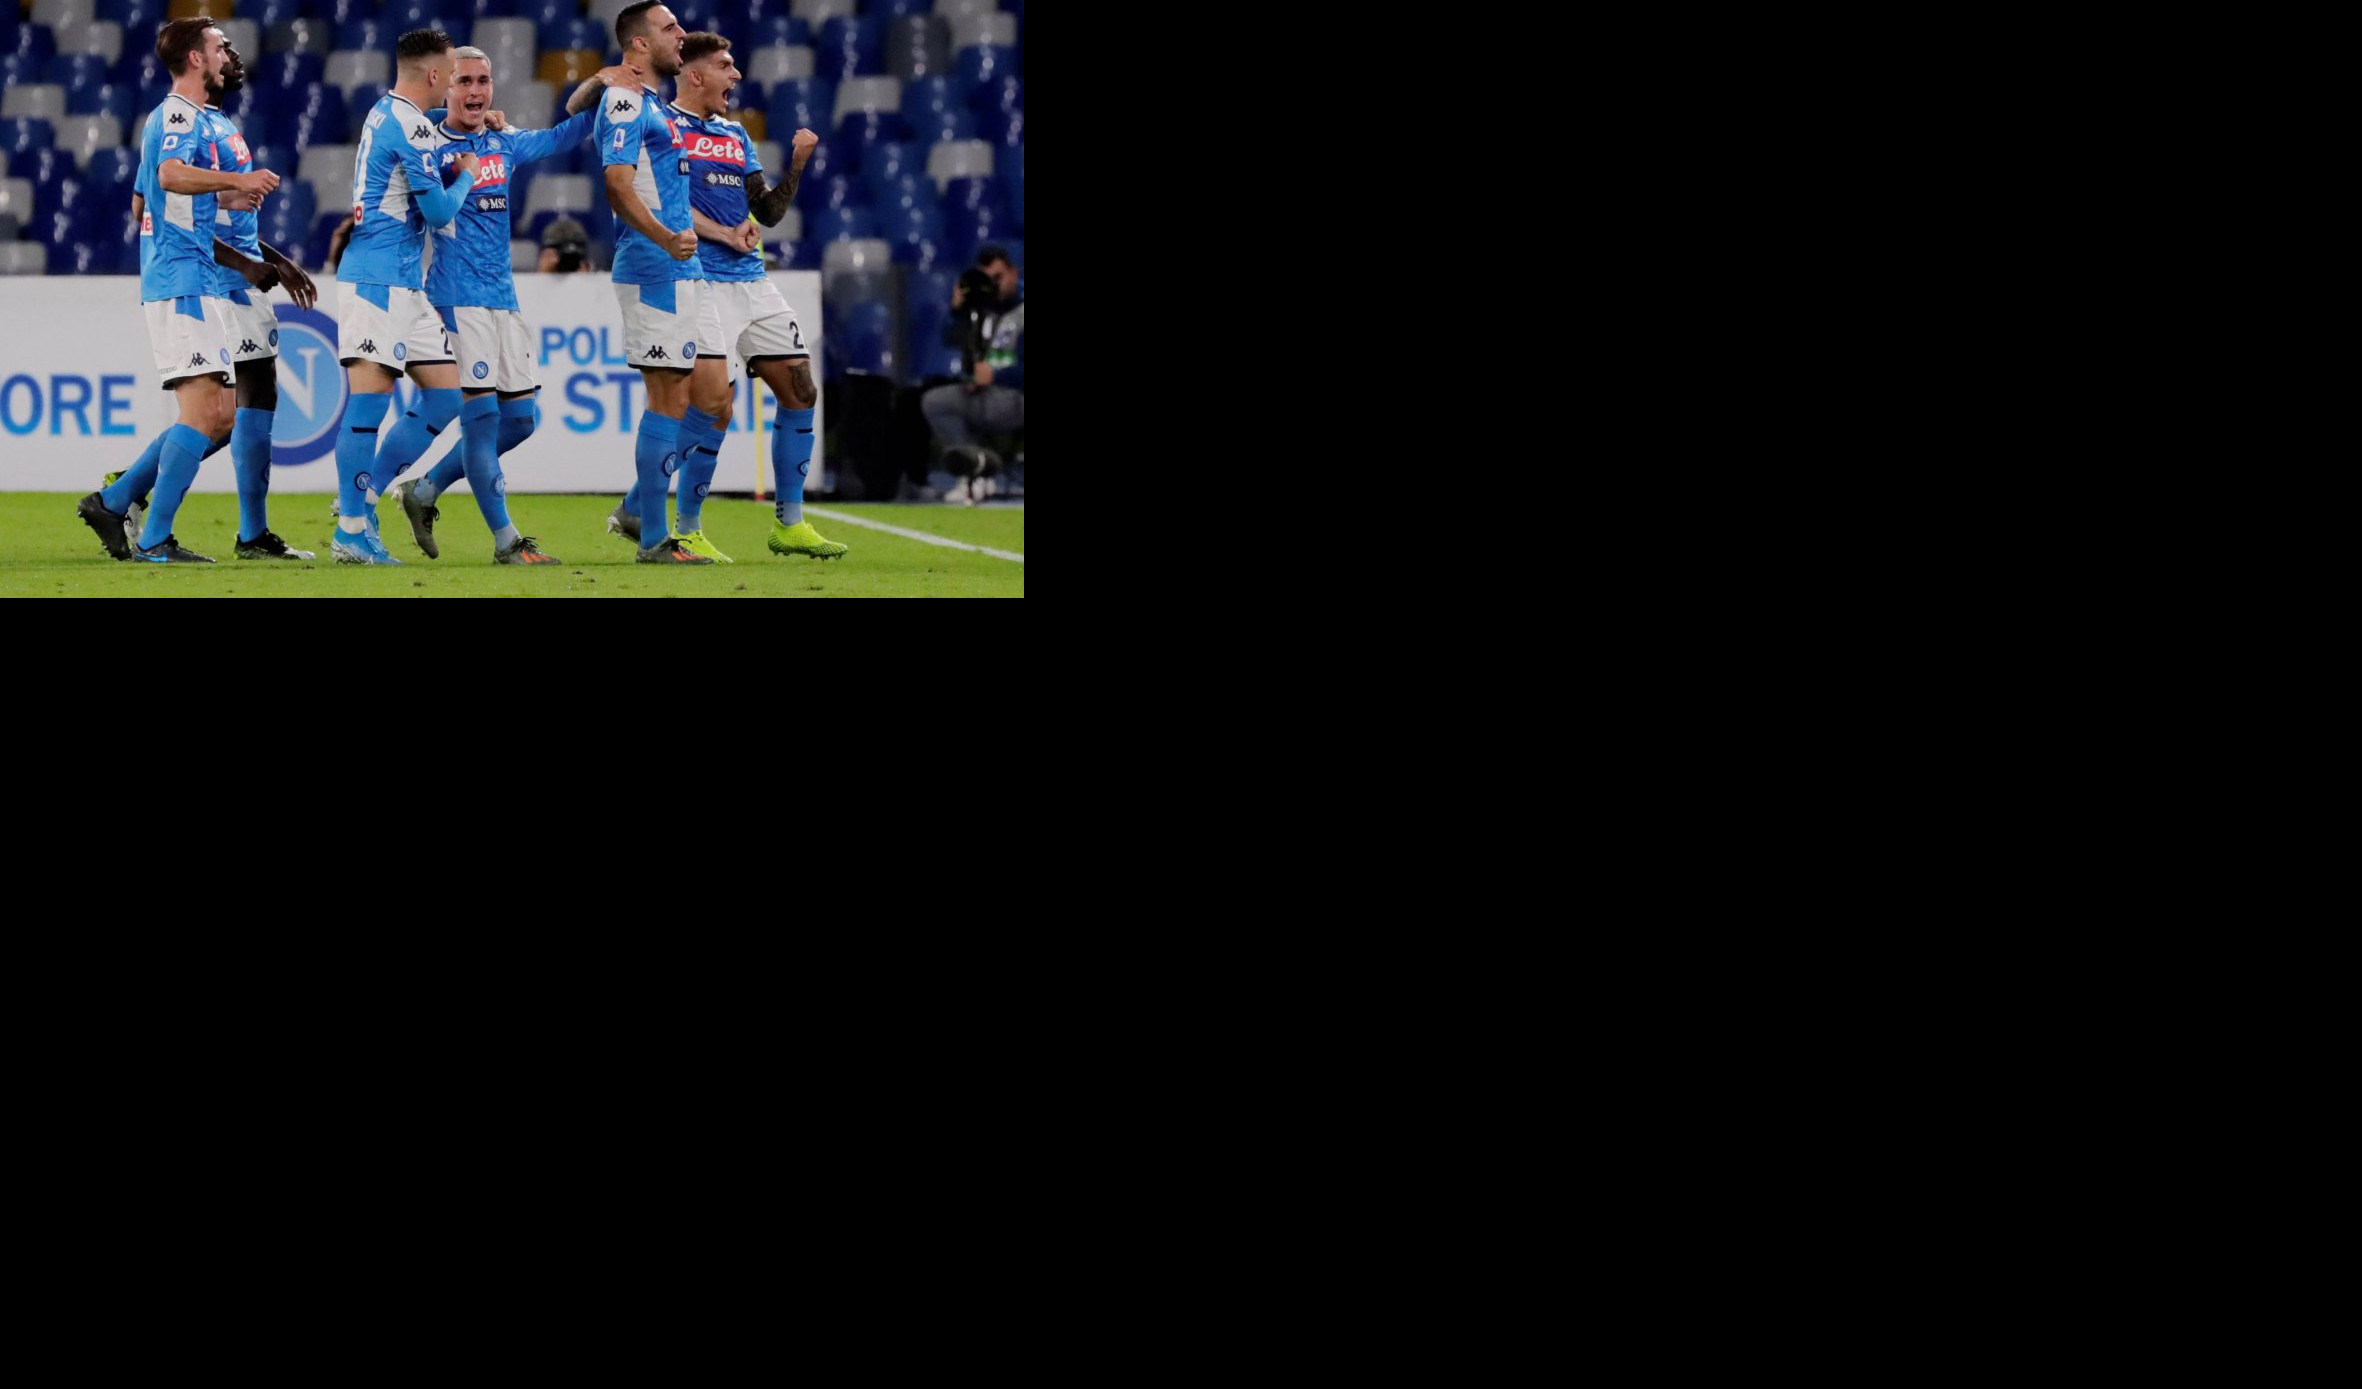 (VIDEO) MAKSA ZAKLJUČAO RONALDA I UZEO TROFEJ! Bufon nije mogao da odbrani sve, Napoli posle penala do Kupa Italije!